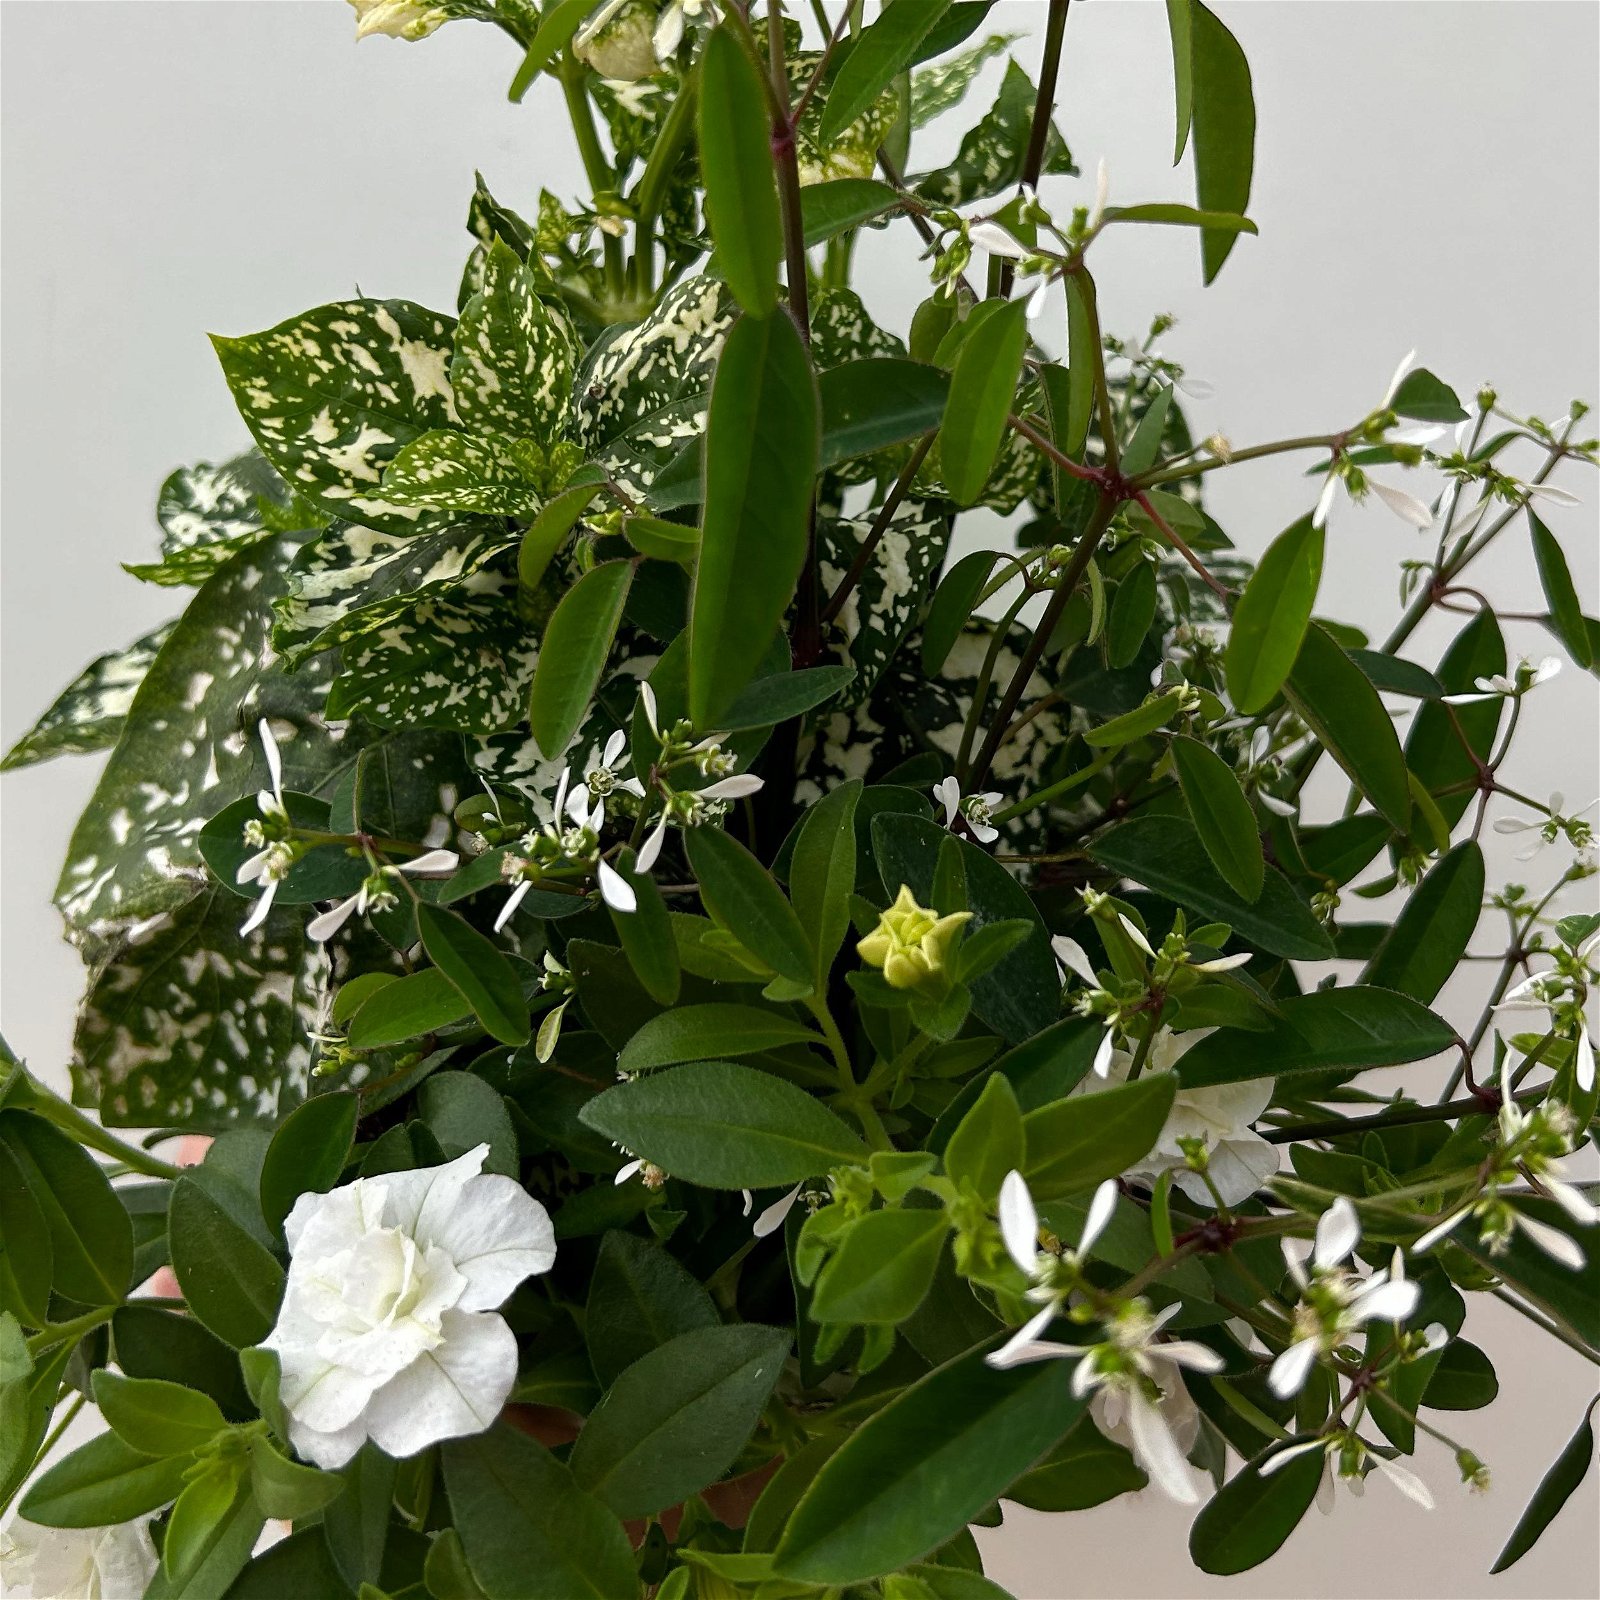 Balkonpflanzen-Trio weiß, Topf-Ø 12/13 cm, 3er-Set